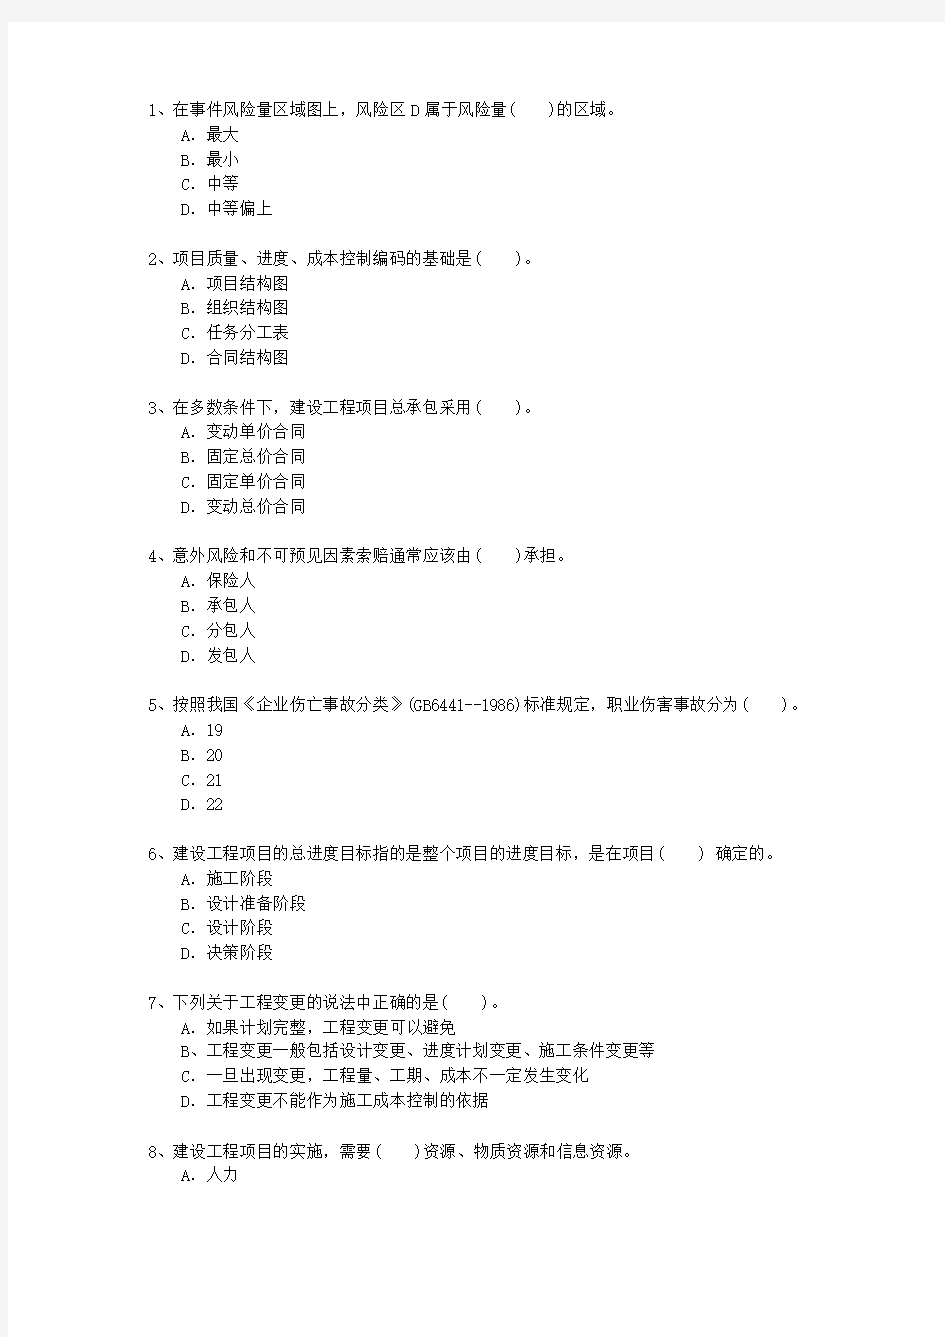 2013一级香港特别行政区建造师《法律法规》最新考试试题库(完整版)